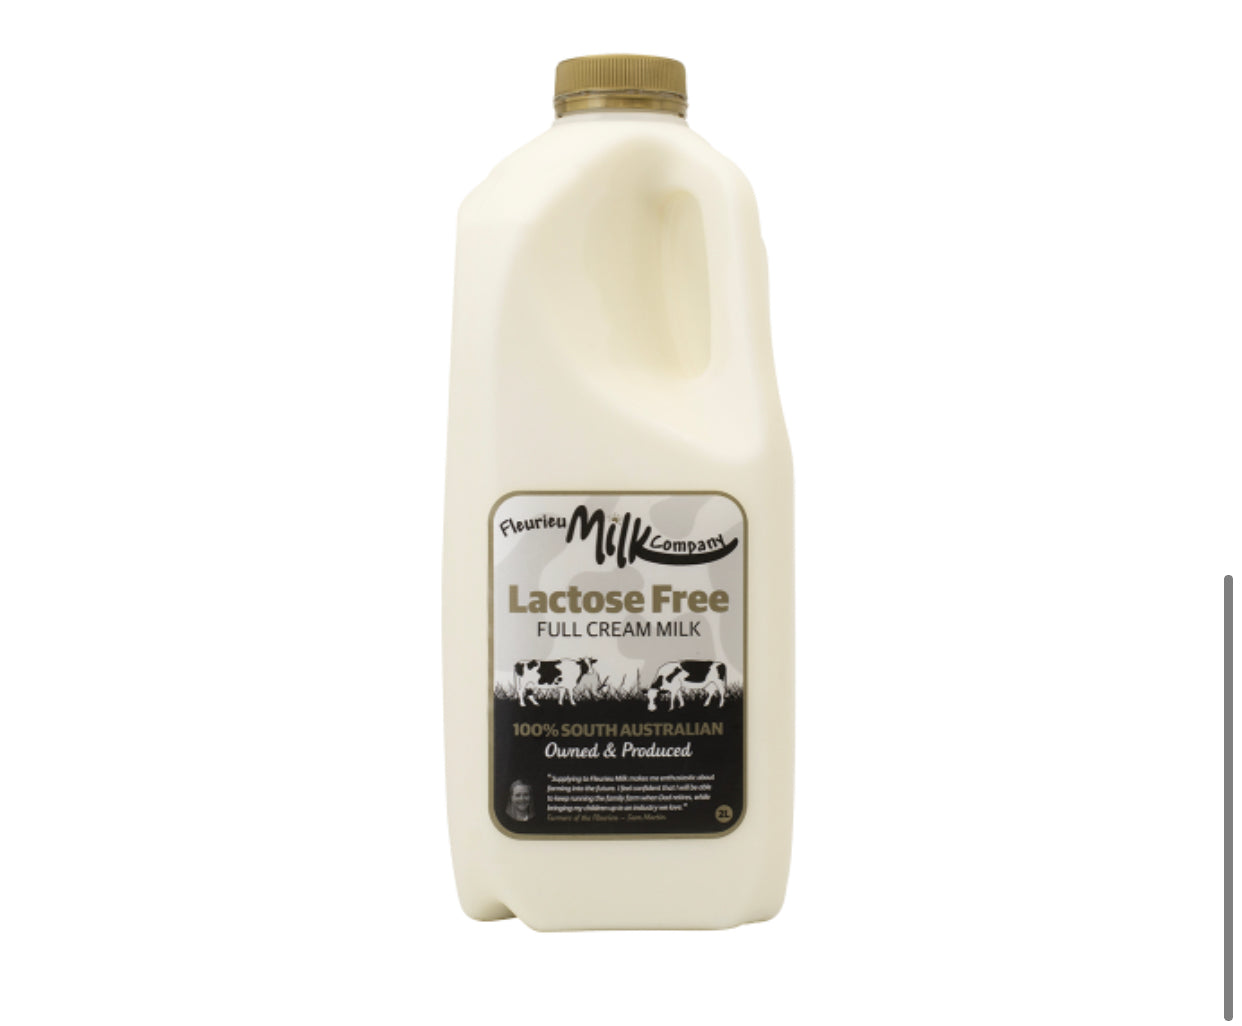 Fleurieu Lactose Free Milk 2l